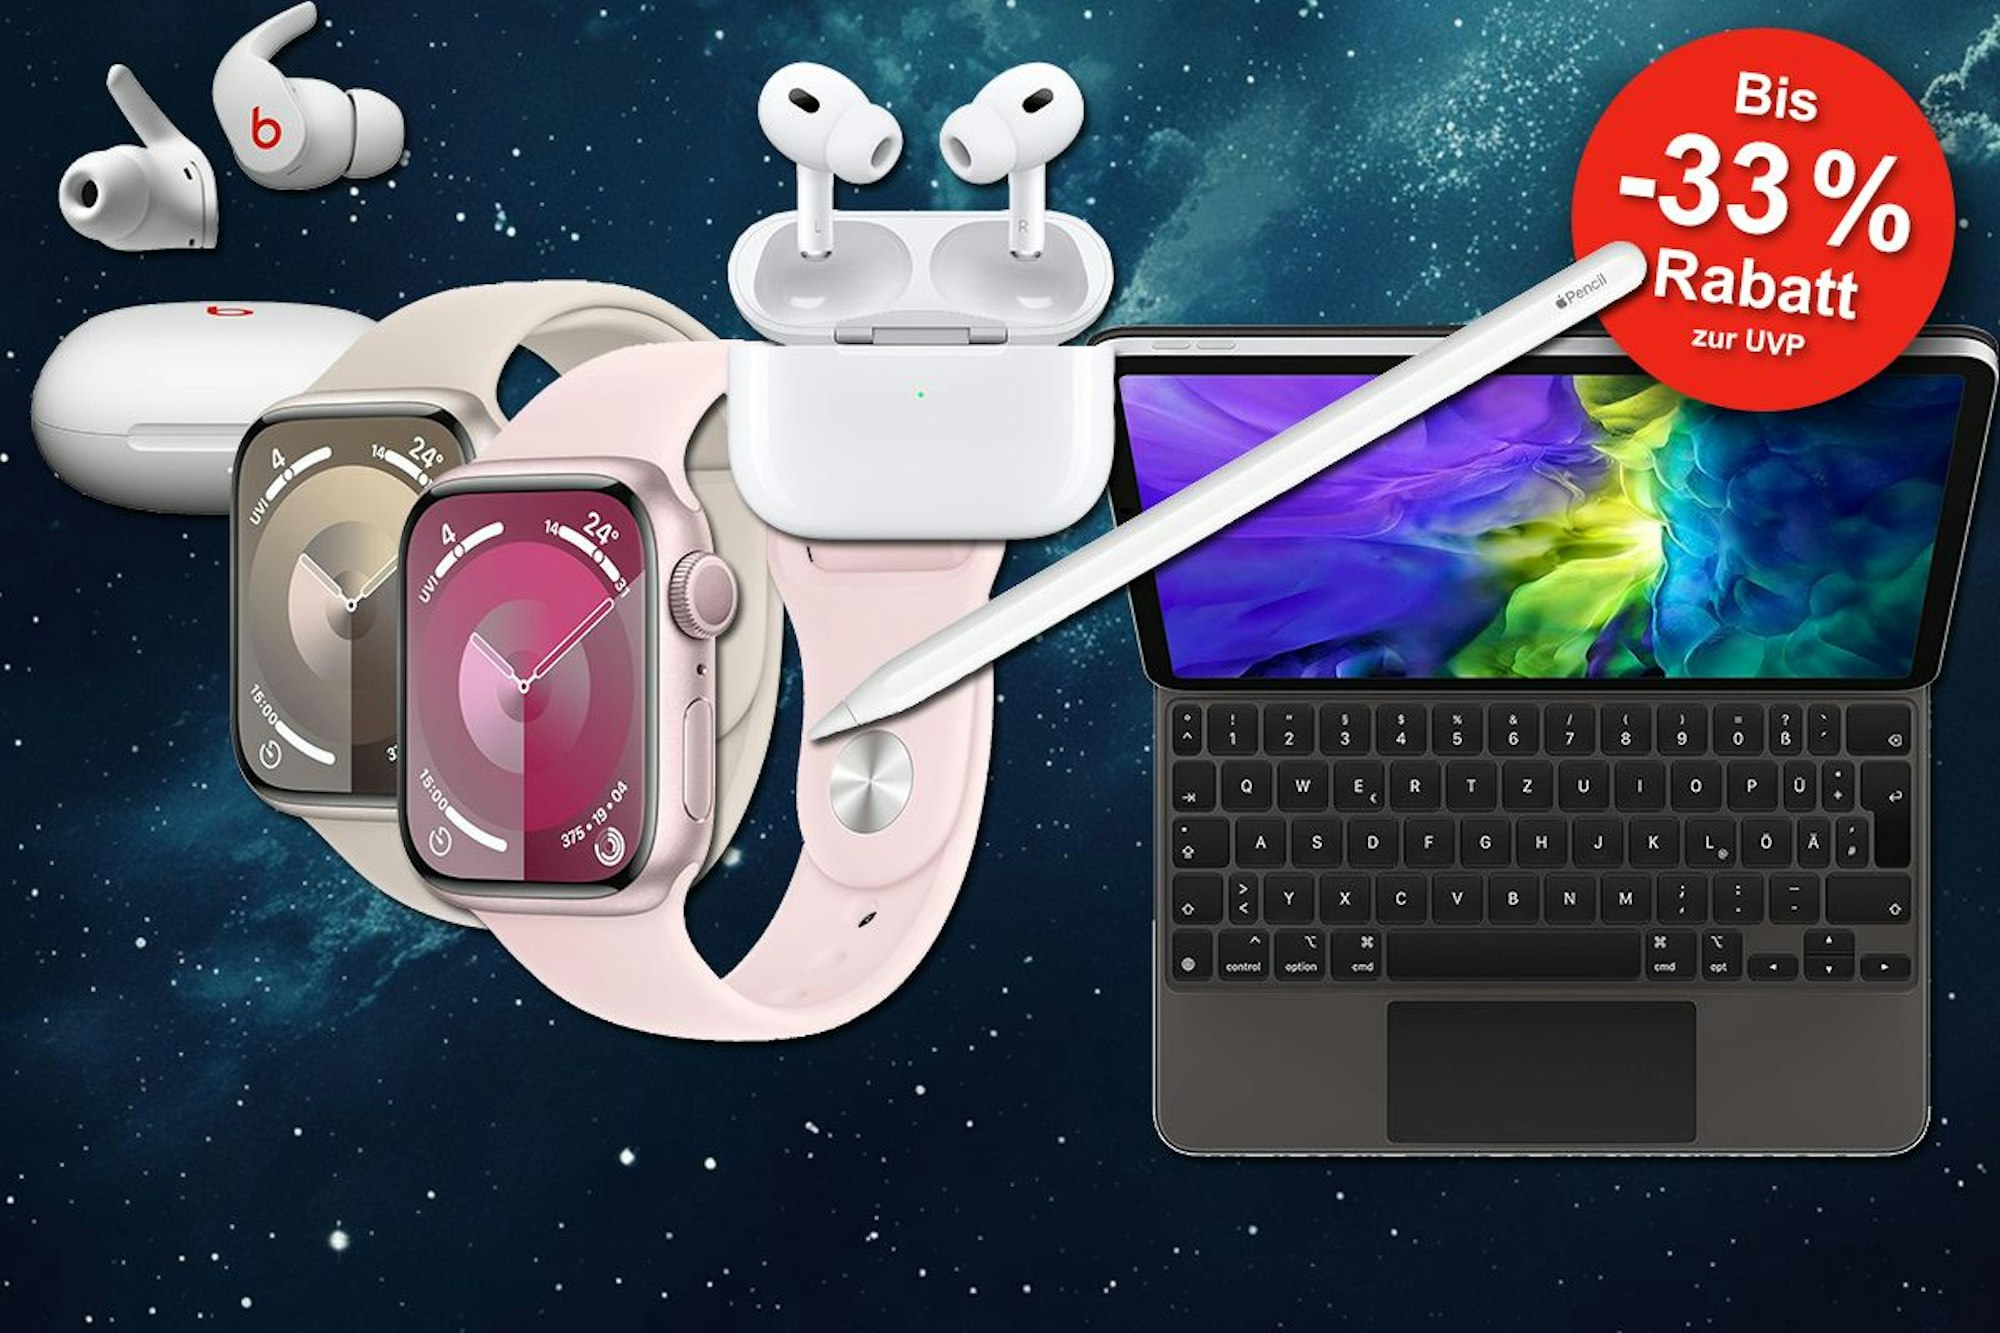 Apple und Beats Sale bei Amazon - Spare bis zu 33% auf Apple Watch, AirPods, Apple Zubehör und Beats Kopfhörer